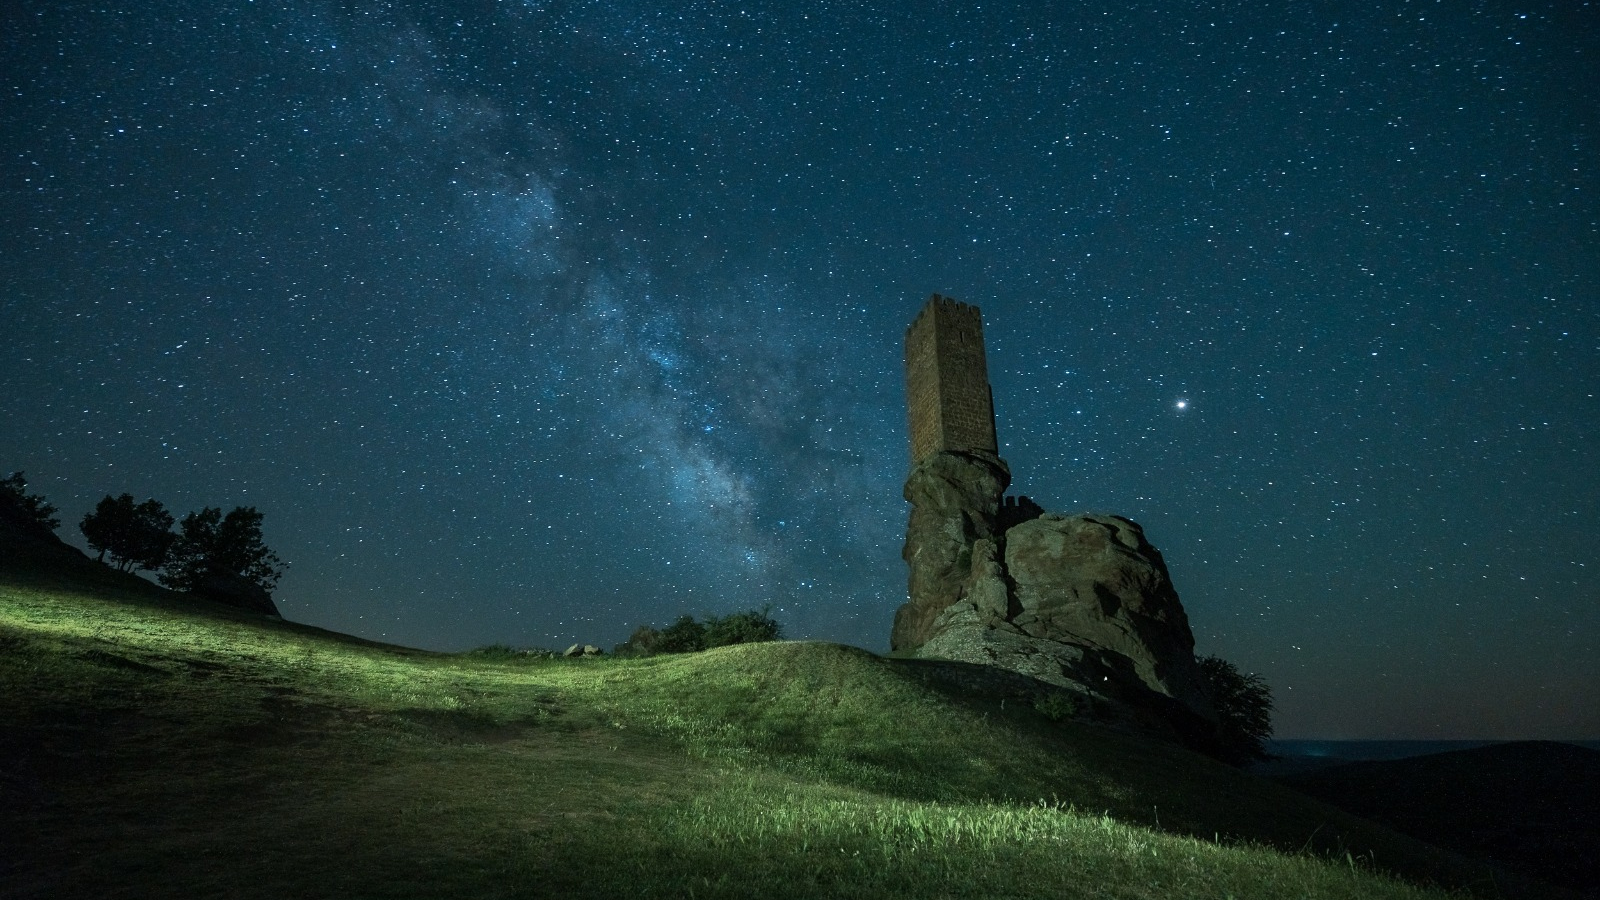 Turismo de estrellas, la astronómica desde de Mancha